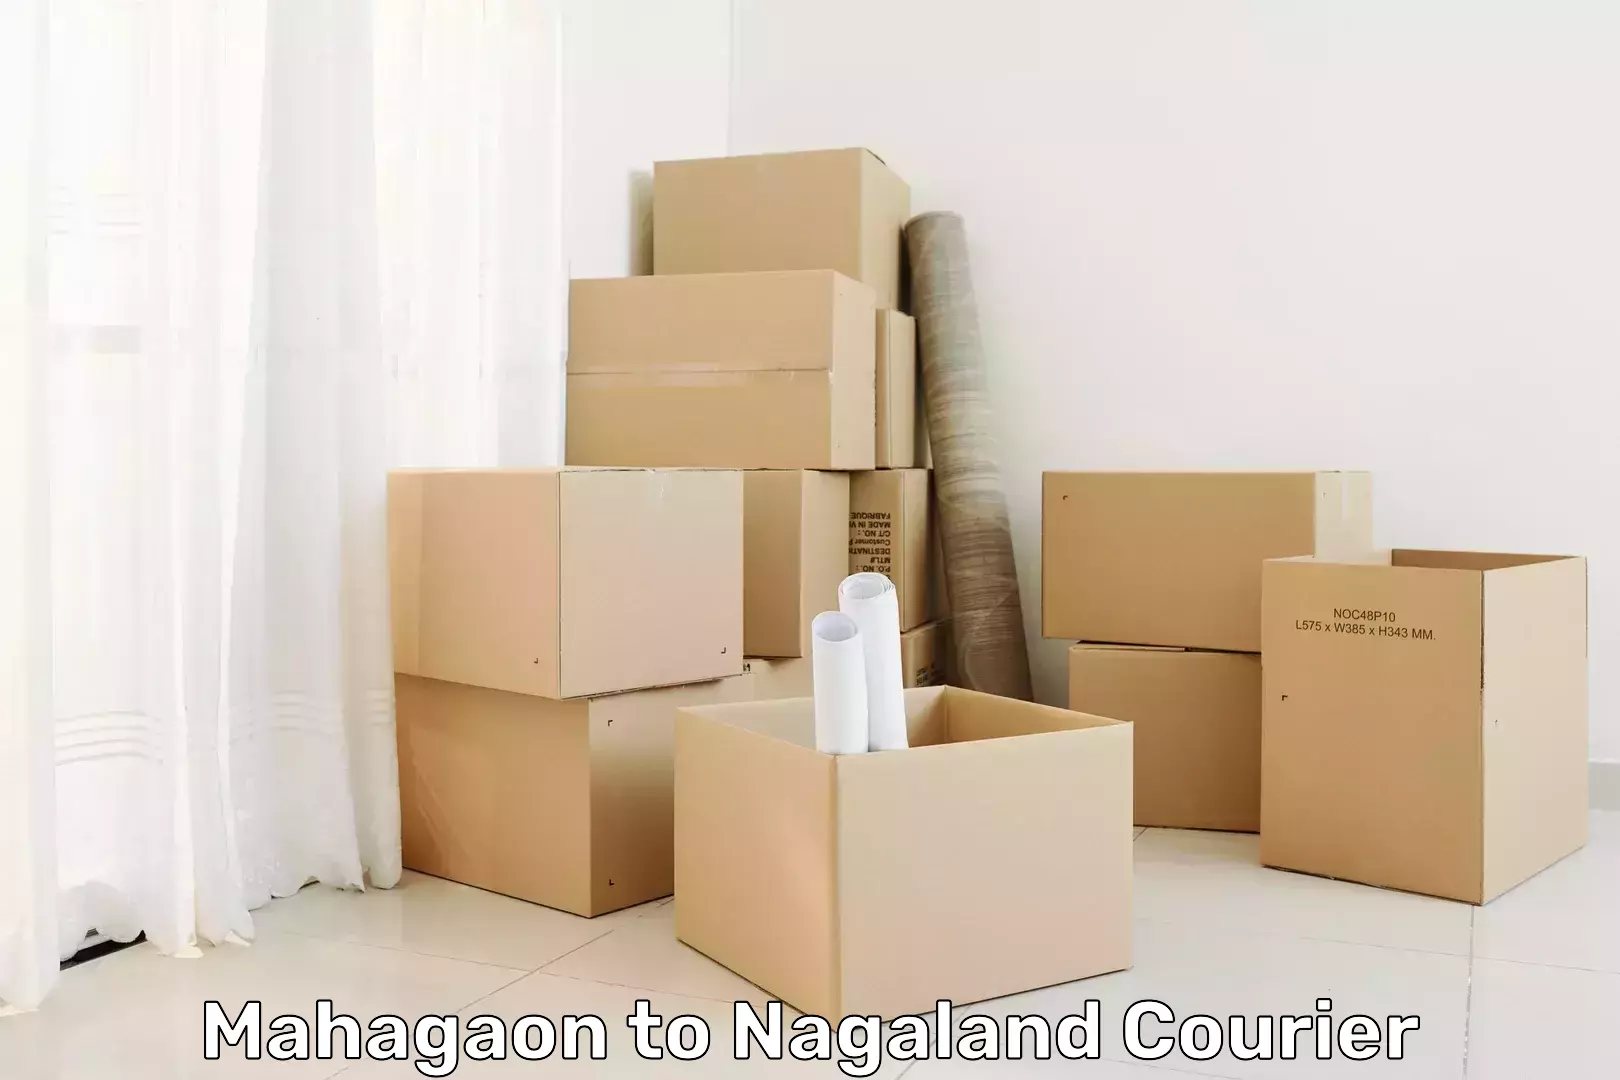 Global shipping networks in Mahagaon to NIT Nagaland